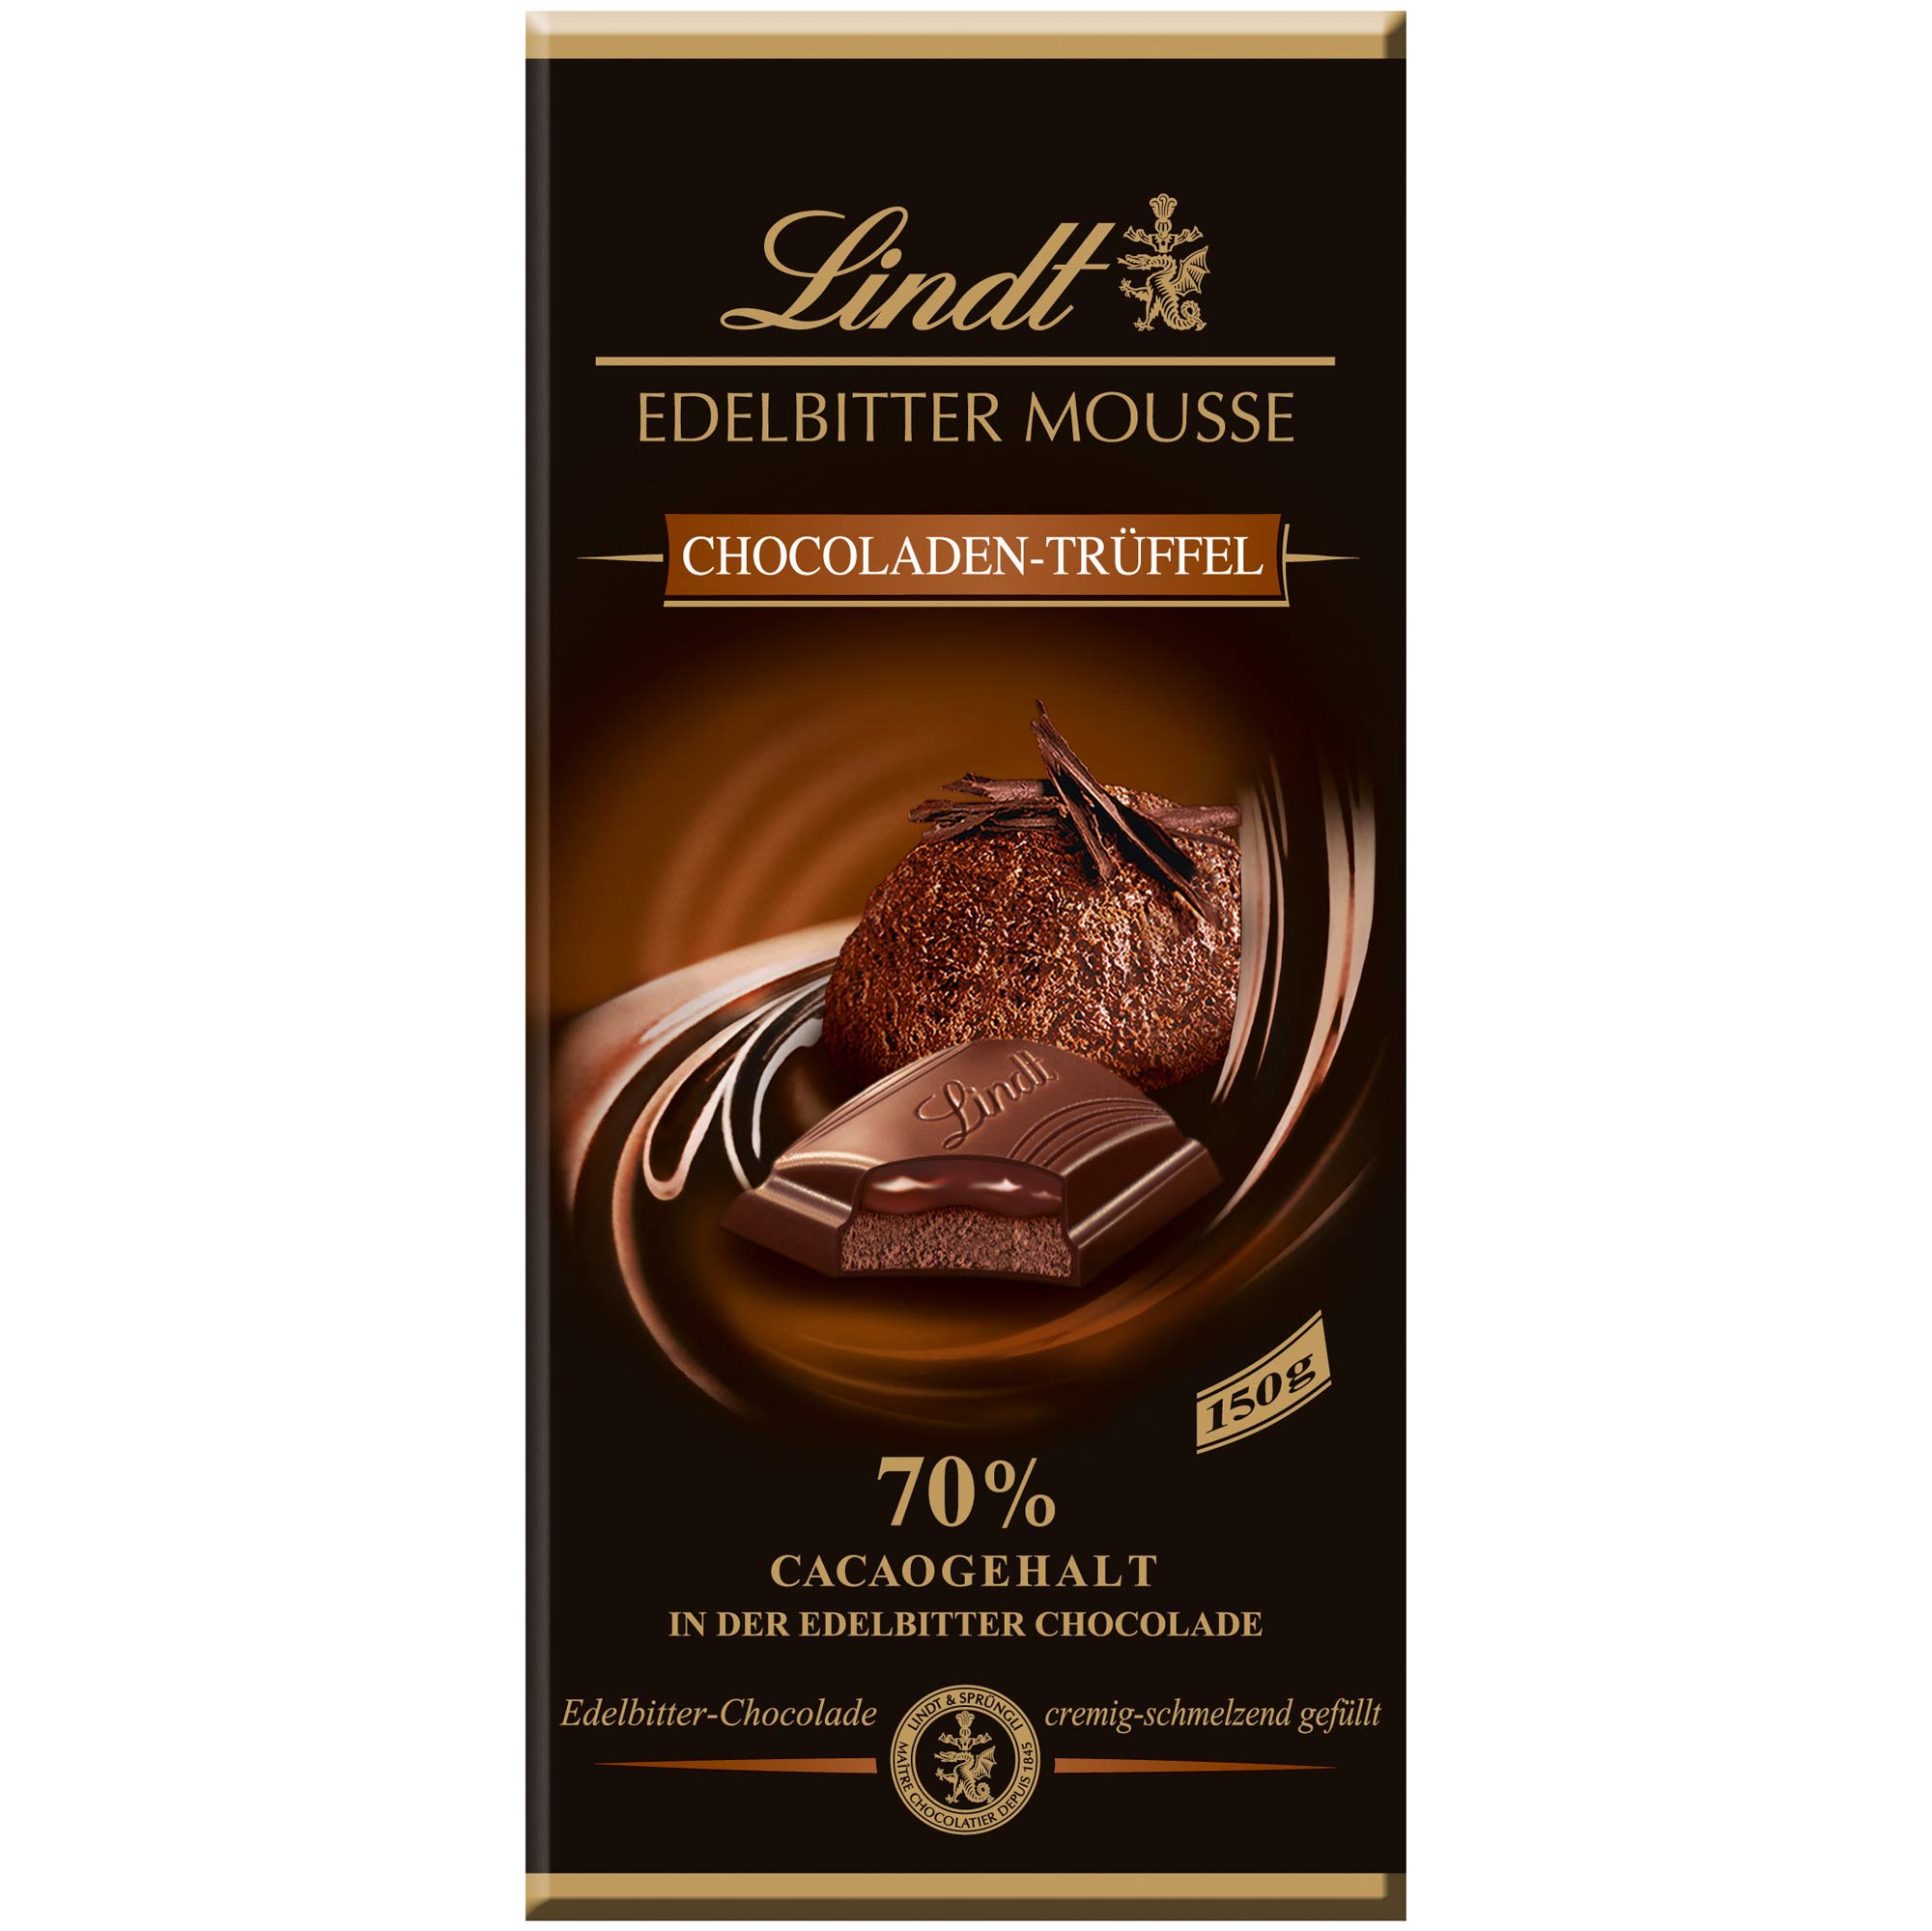 Lindt Edelbitter Mousse Chocoladen-Trüffel 150g | Online kaufen im ...